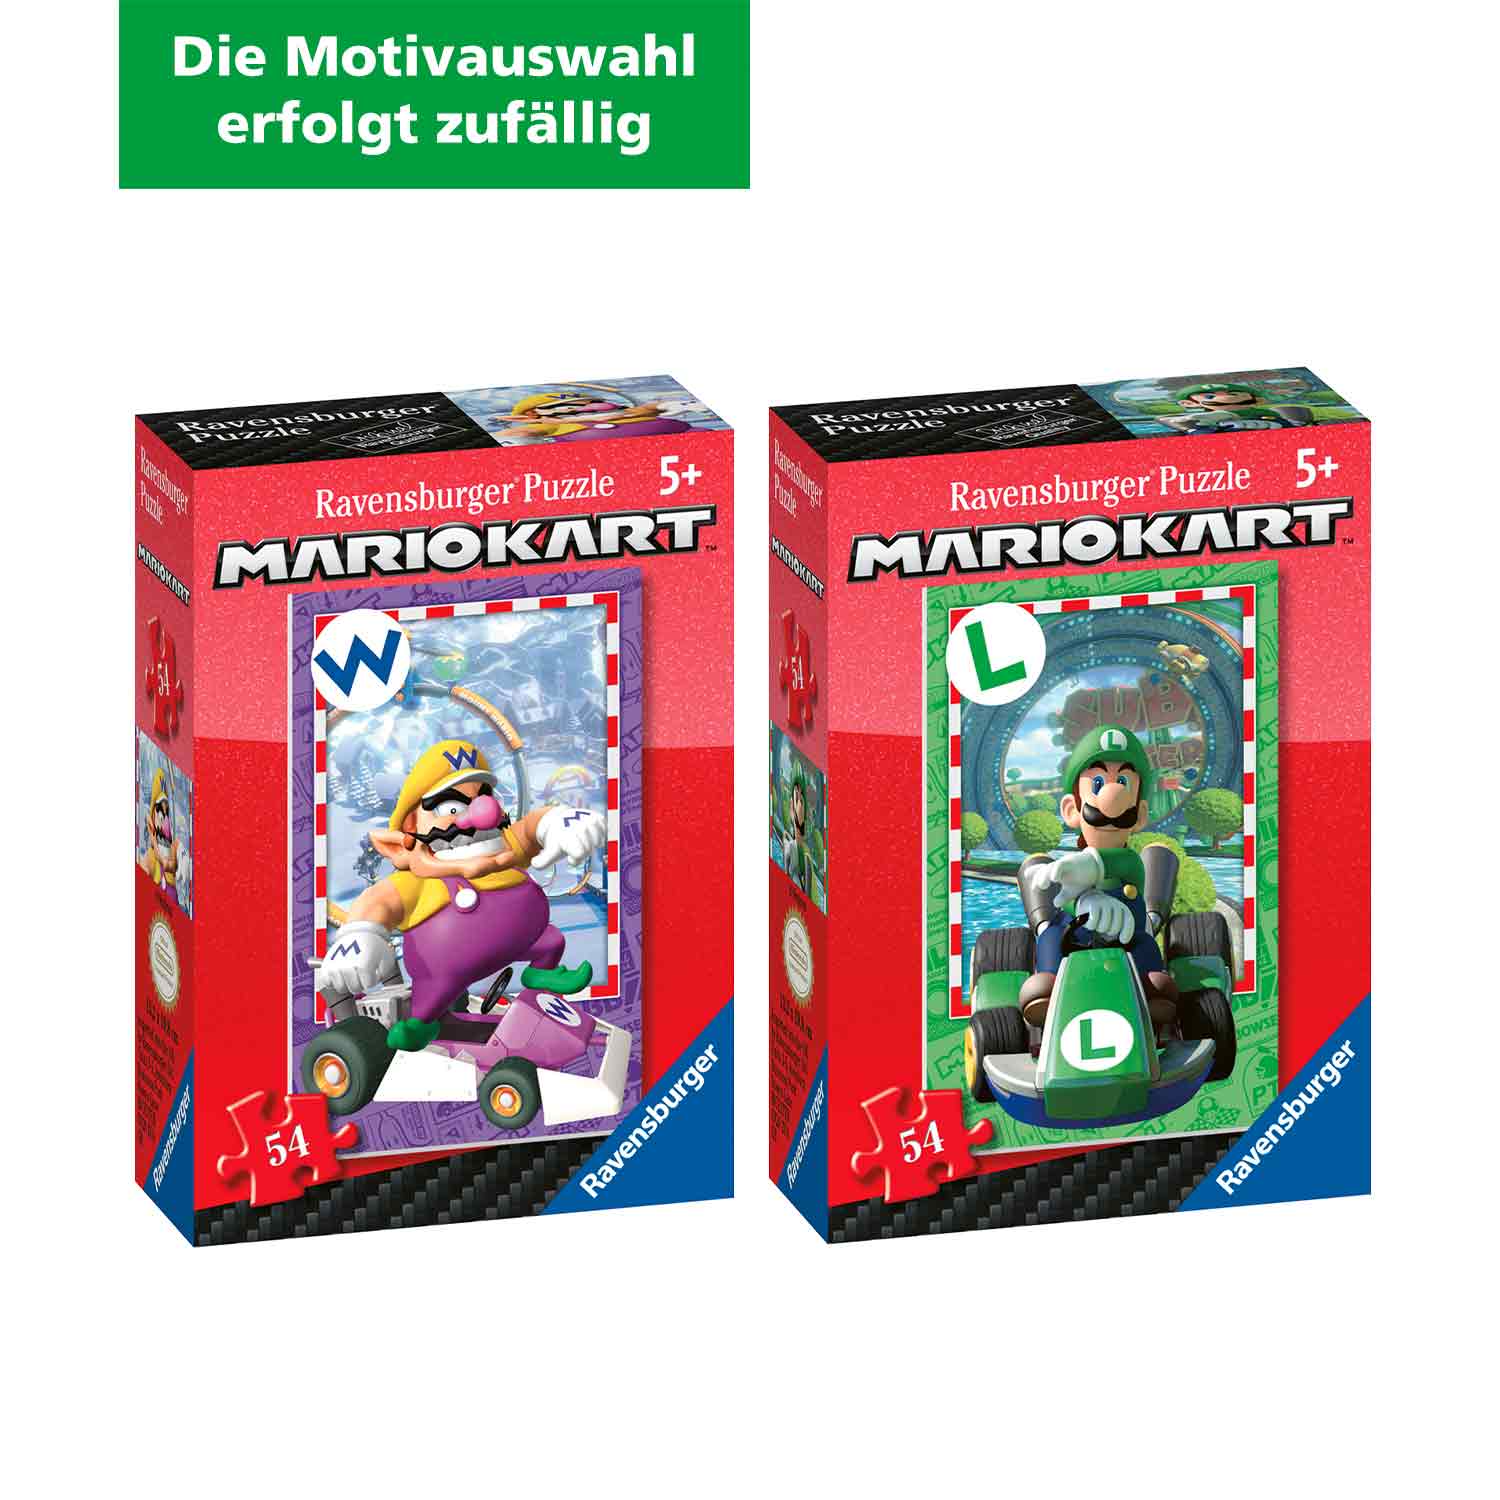 Ravensburger Mini-Puzzle Super Mario 54 Teile (Motivauswahl erfolgt zufällig) 